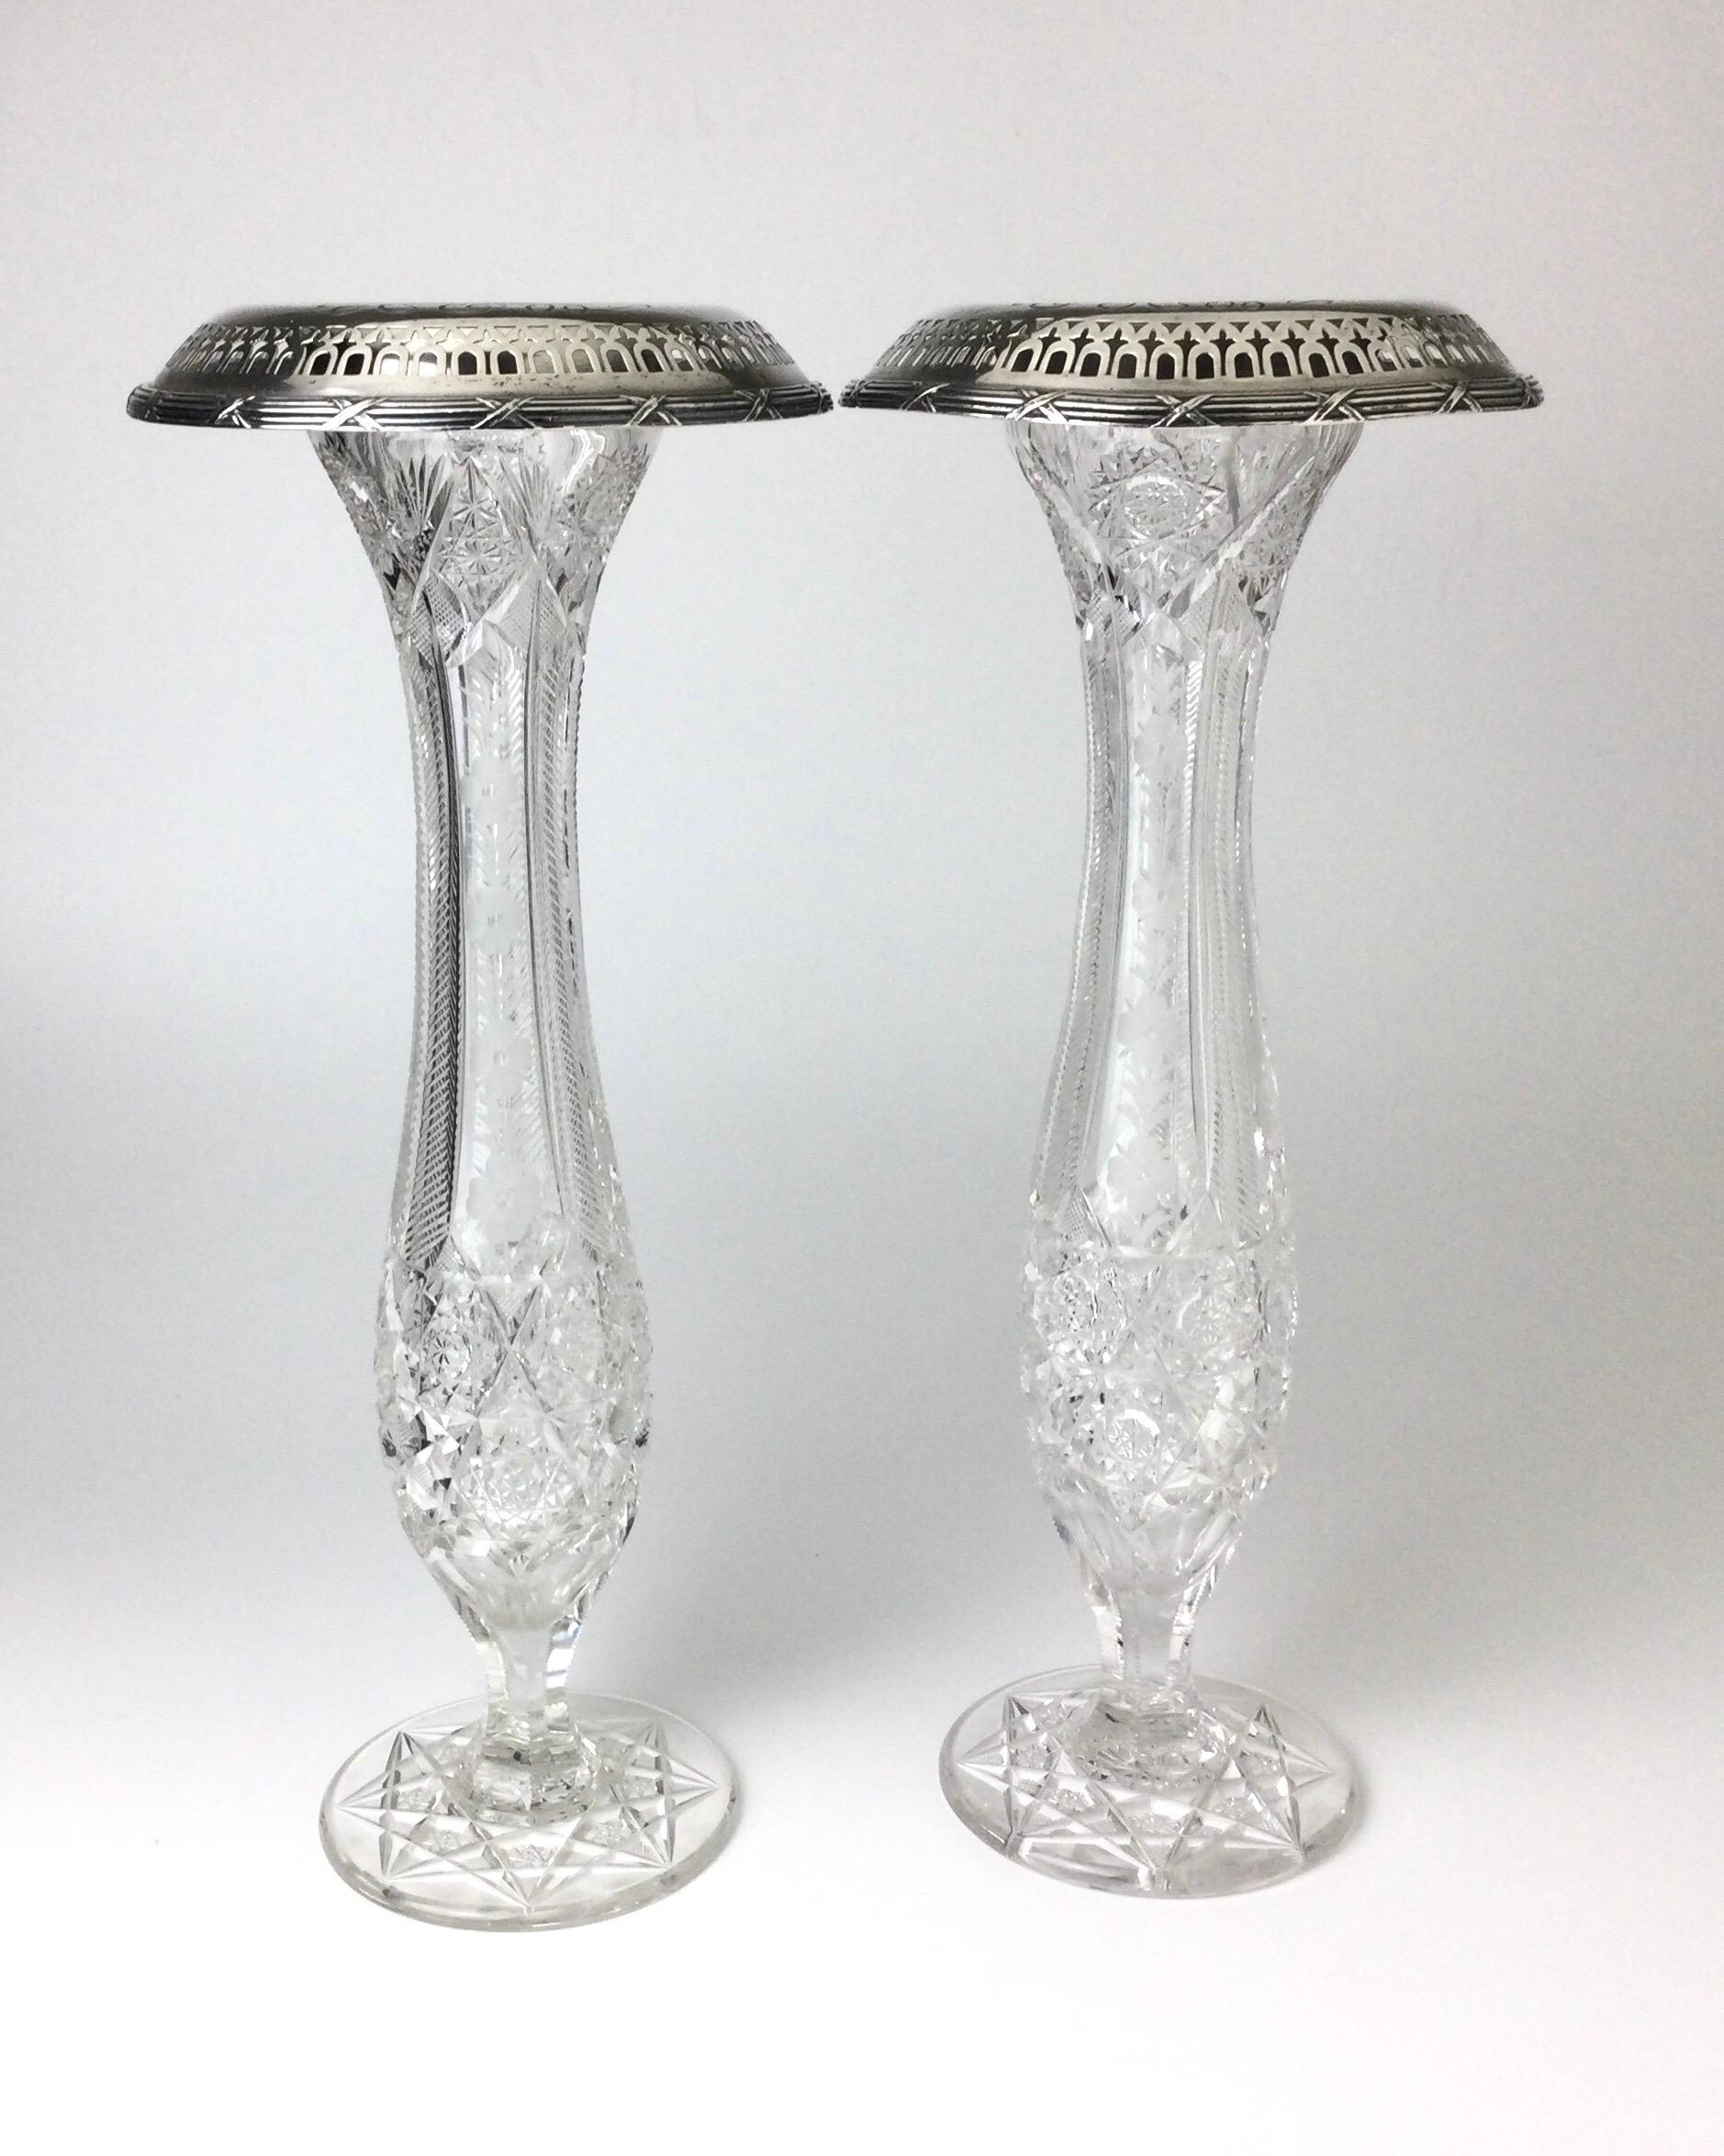 Paire de vases anciens américains en verre taillé Brilliant et en argent sterling Gorham. Les vases mesurent chacun 16 1/2